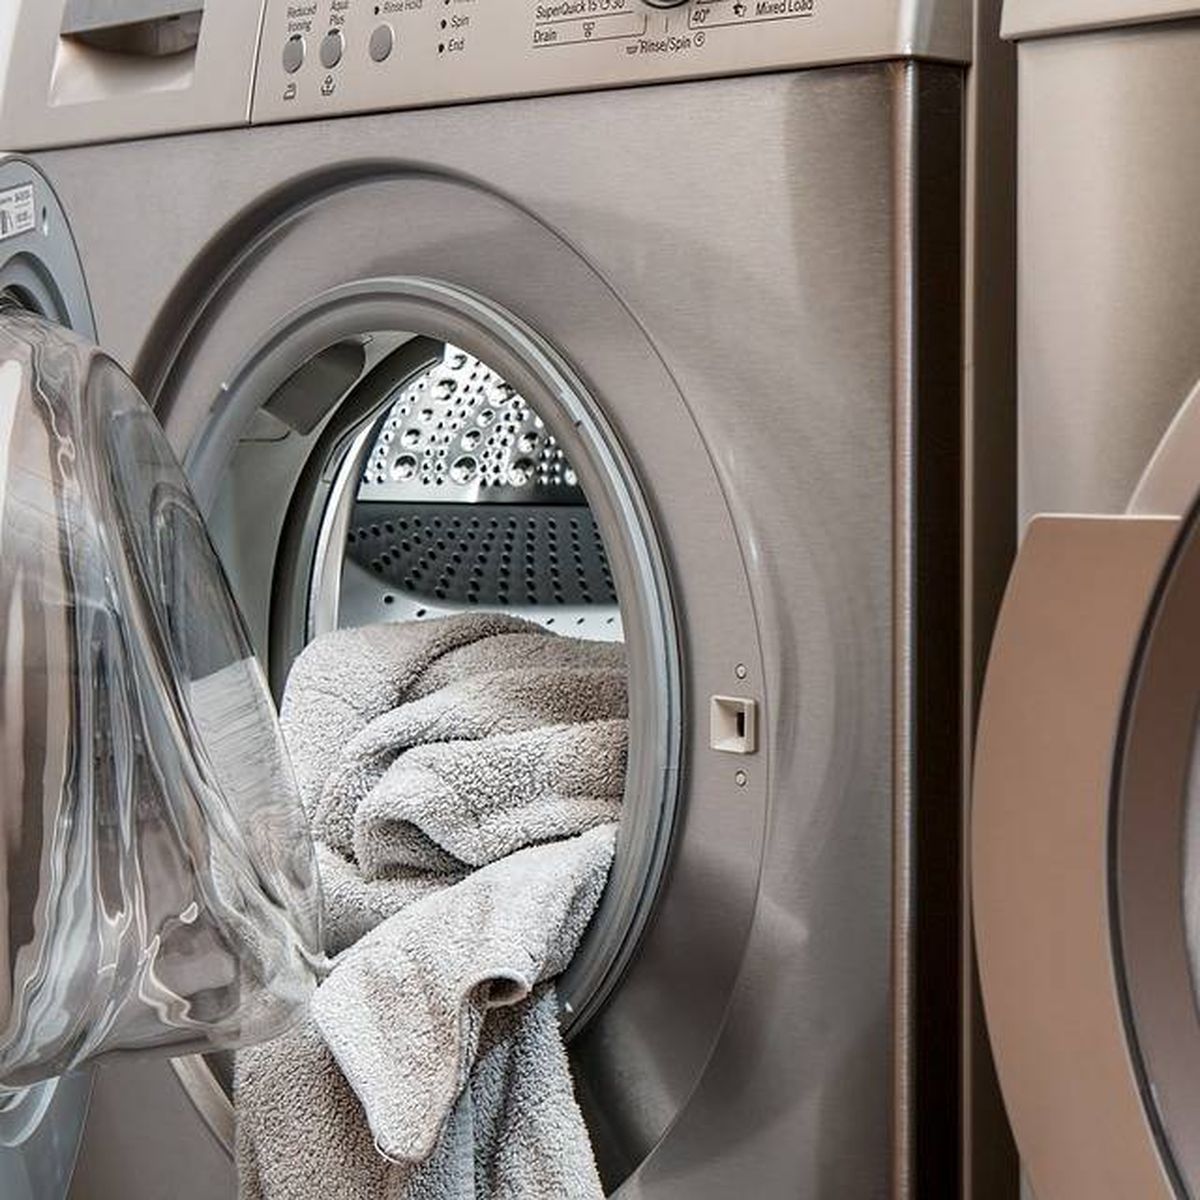 Tendero Superficial habla Las mejores lavadoras de carga frontal para una ropa limpia y perfecta